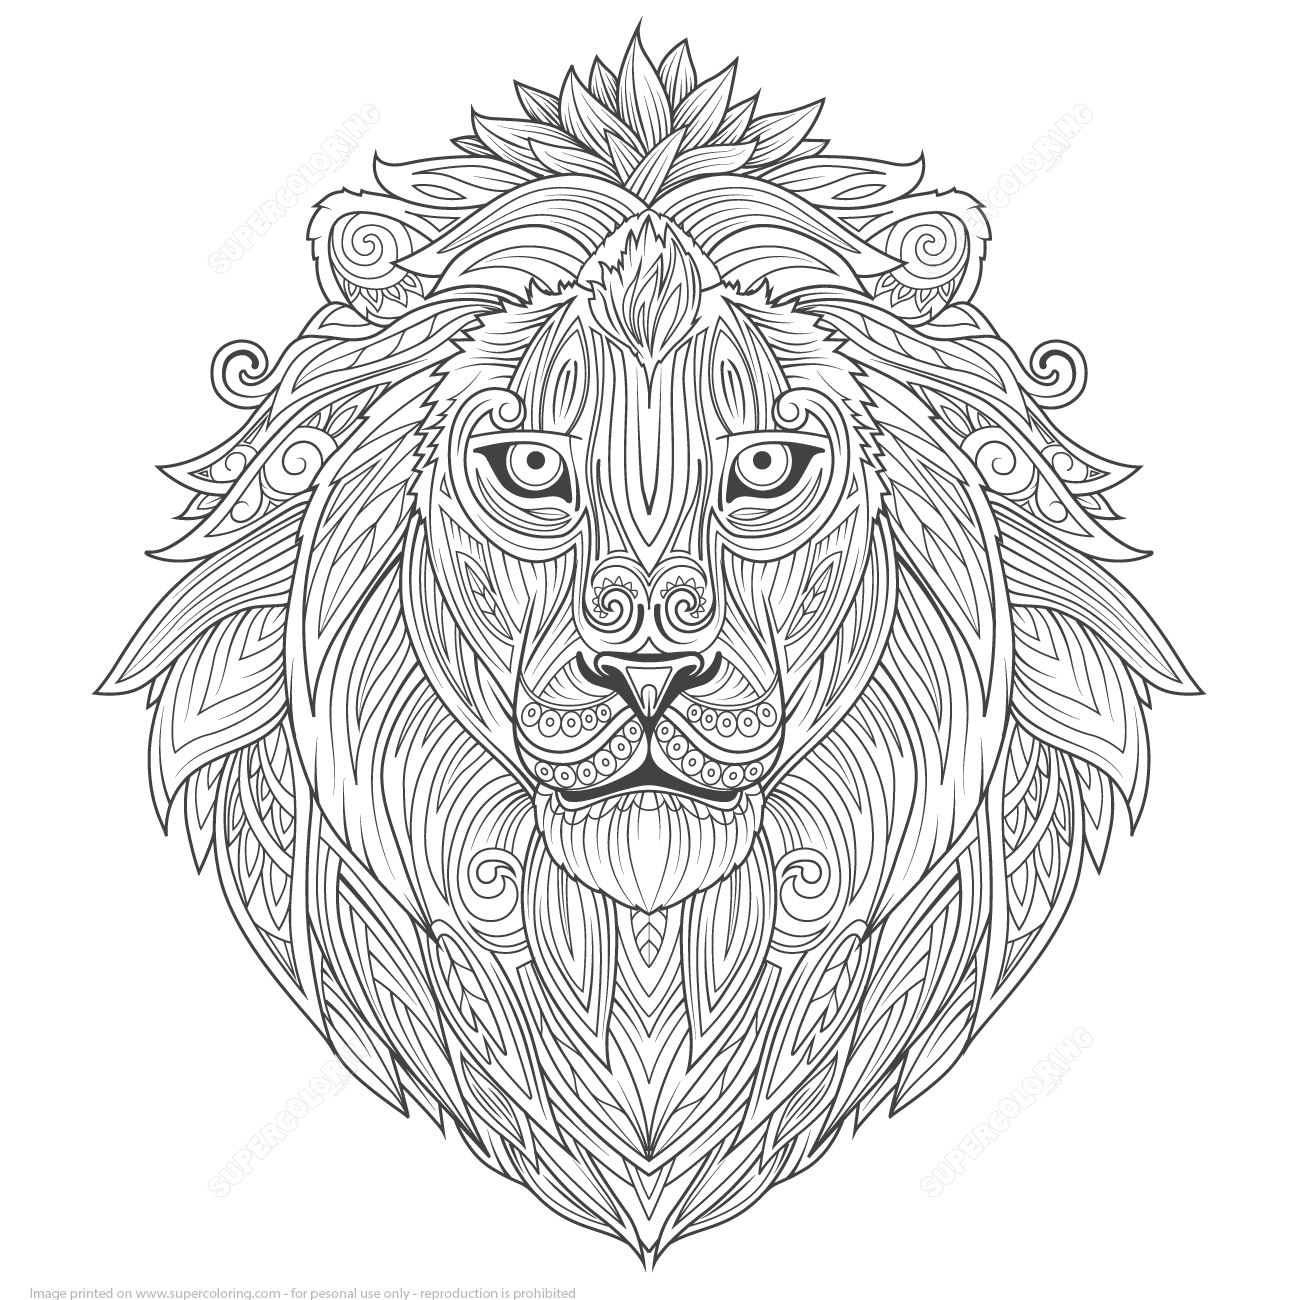 Lion Ethnic Zentangle Adults